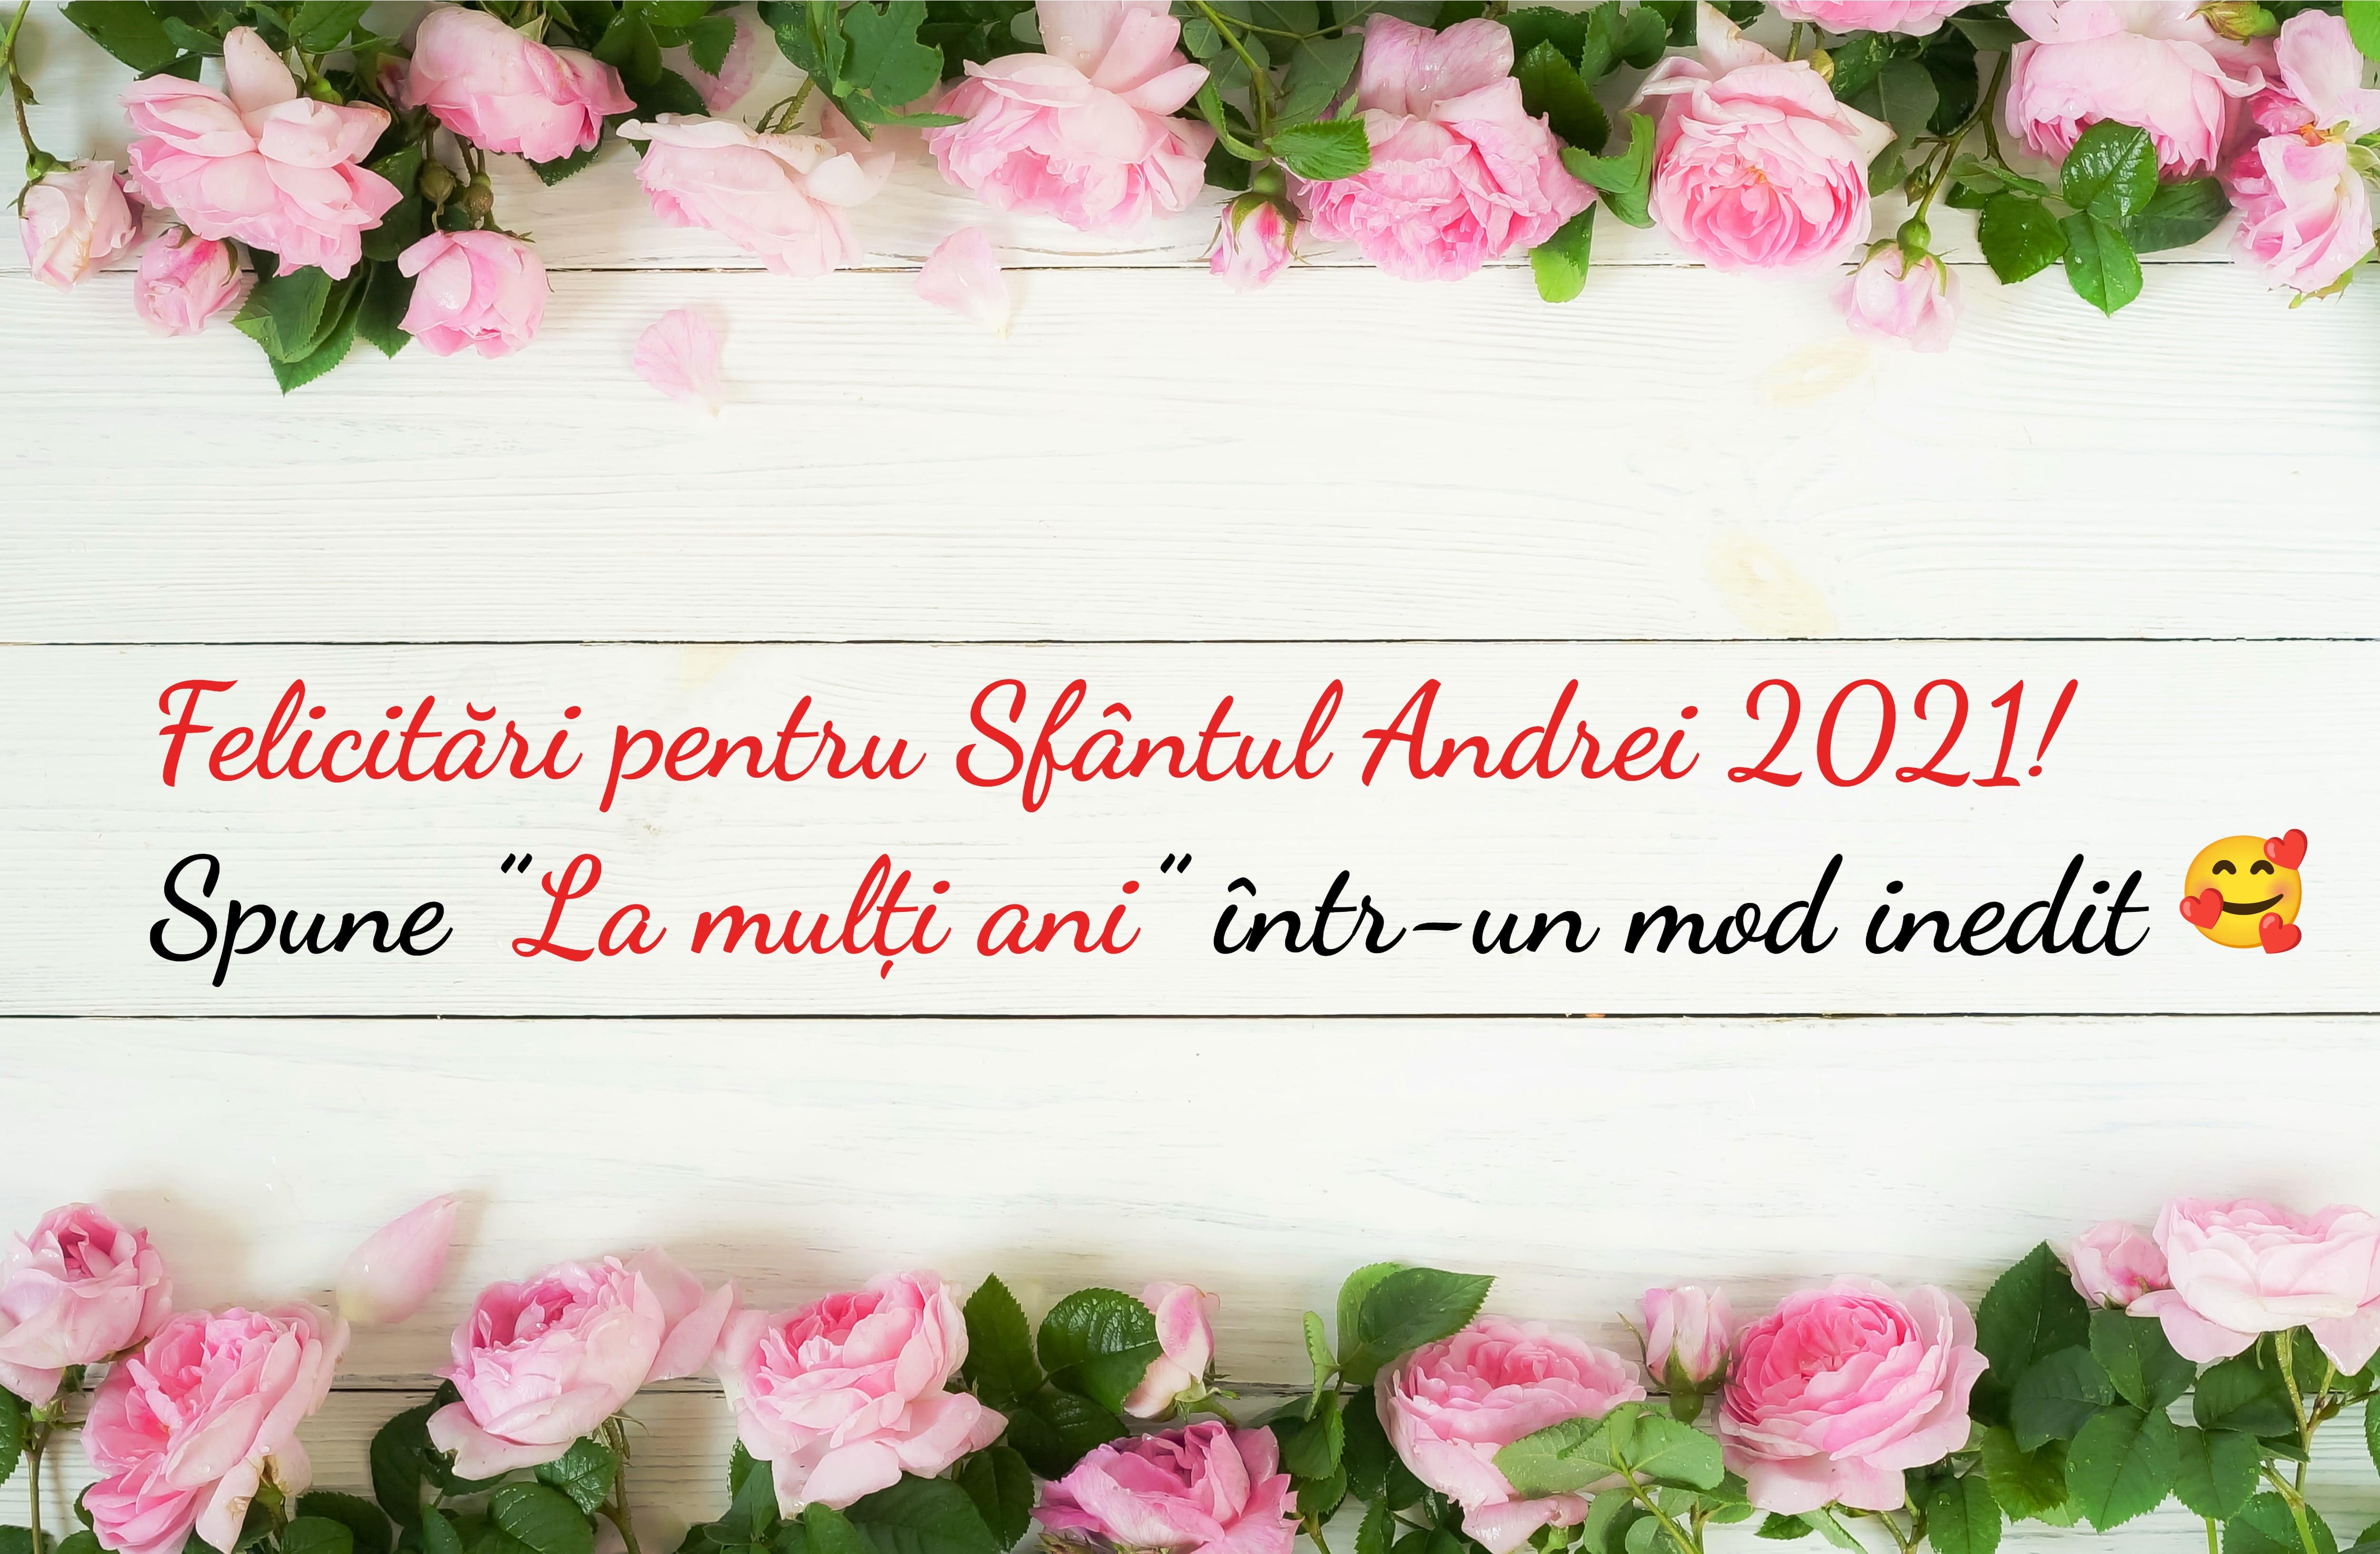 felicitare cu flori roz pe margini pe care scrie mesaje de sfantul andrei 2021